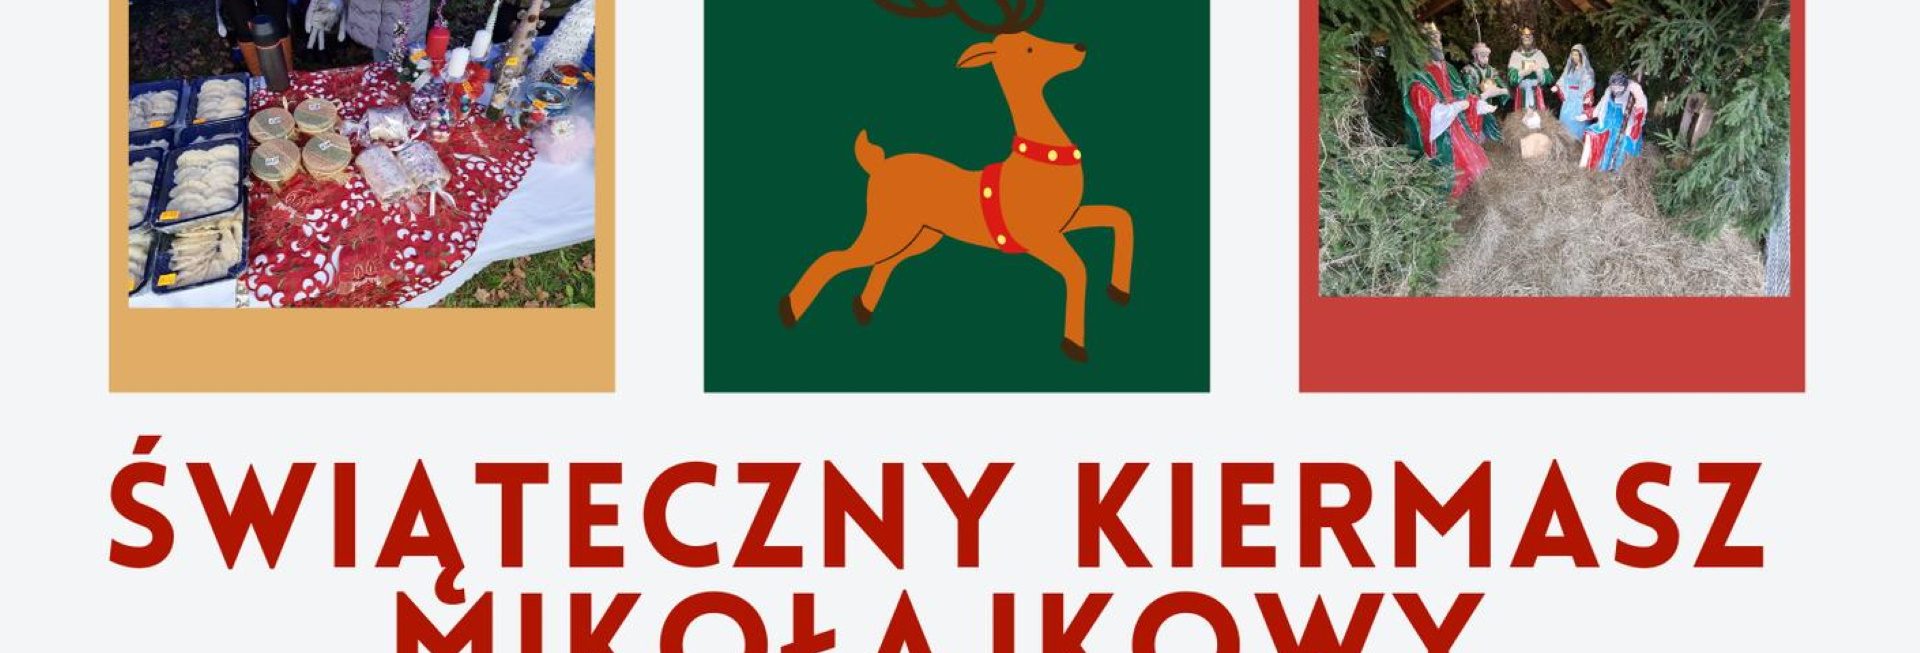 Plakat zapraszający do Gietrzwałdu na Świąteczny Kiermasz Mikołajkowy Gietrzwałd 2022.